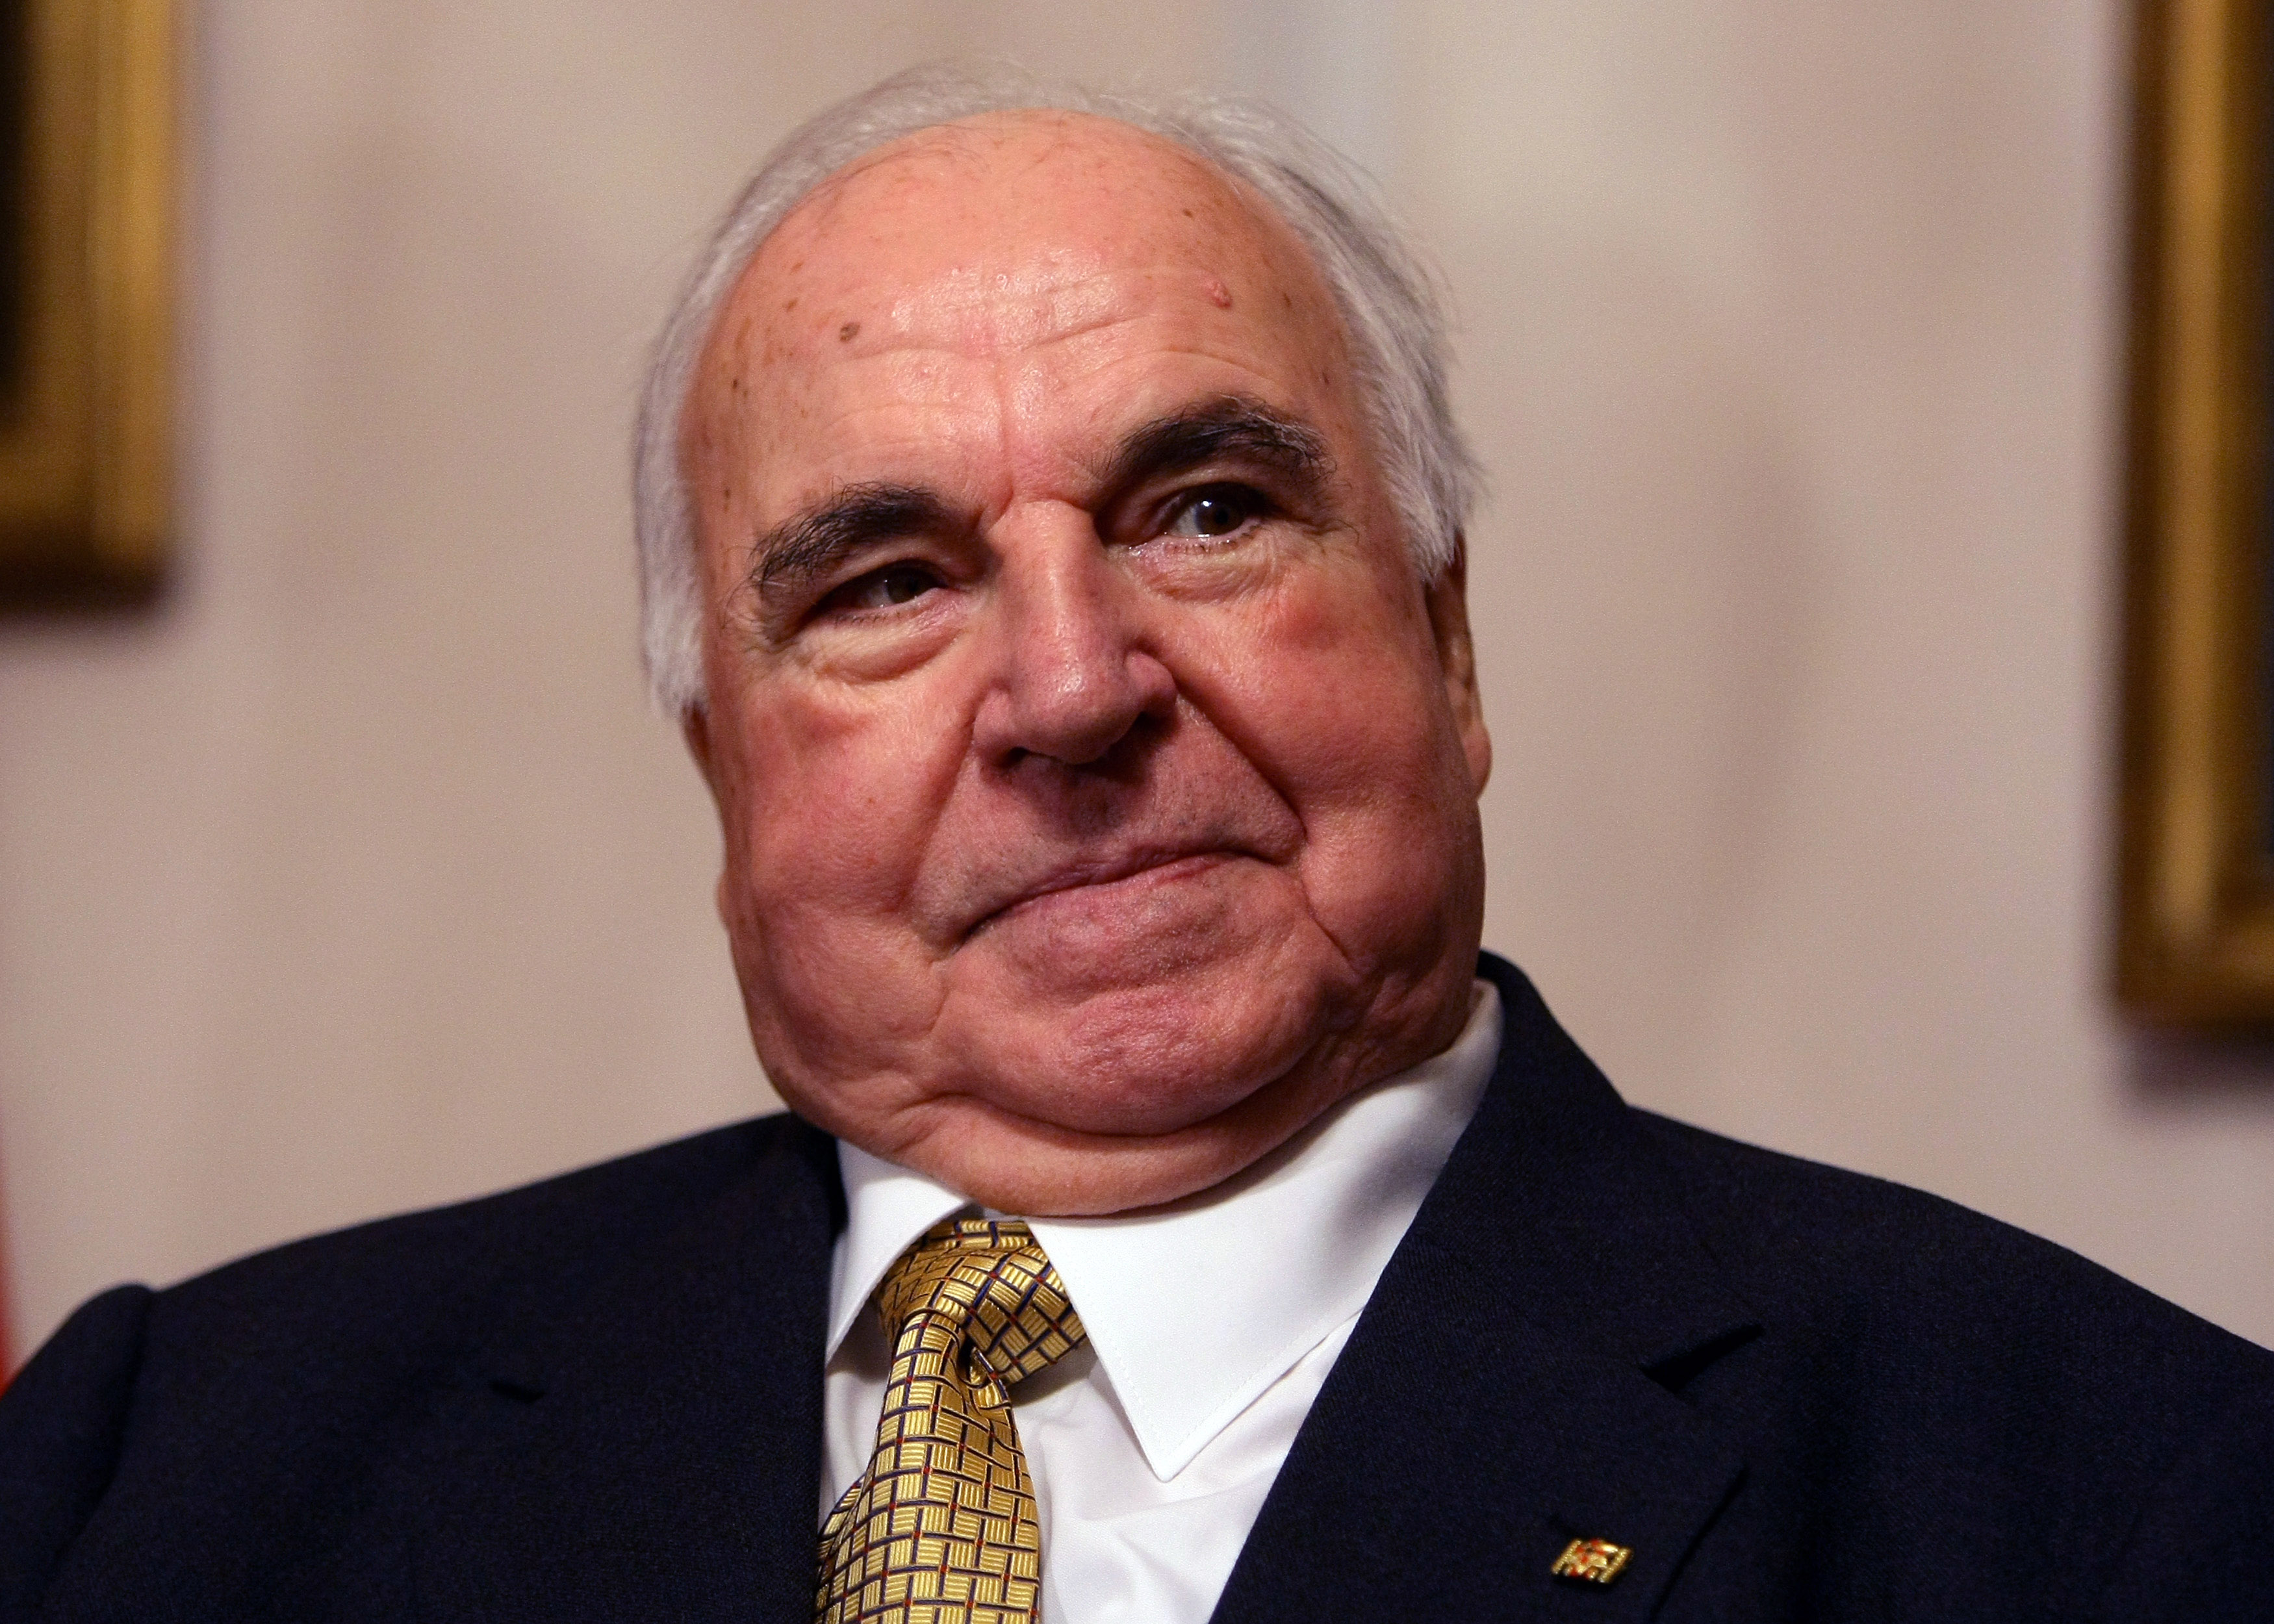 Helmut Kohl ist am 16. Juni 2017 im Alter von 87 Jahren gestorben. Kohl war von 1982 bis 1998 Bundeskanzler.